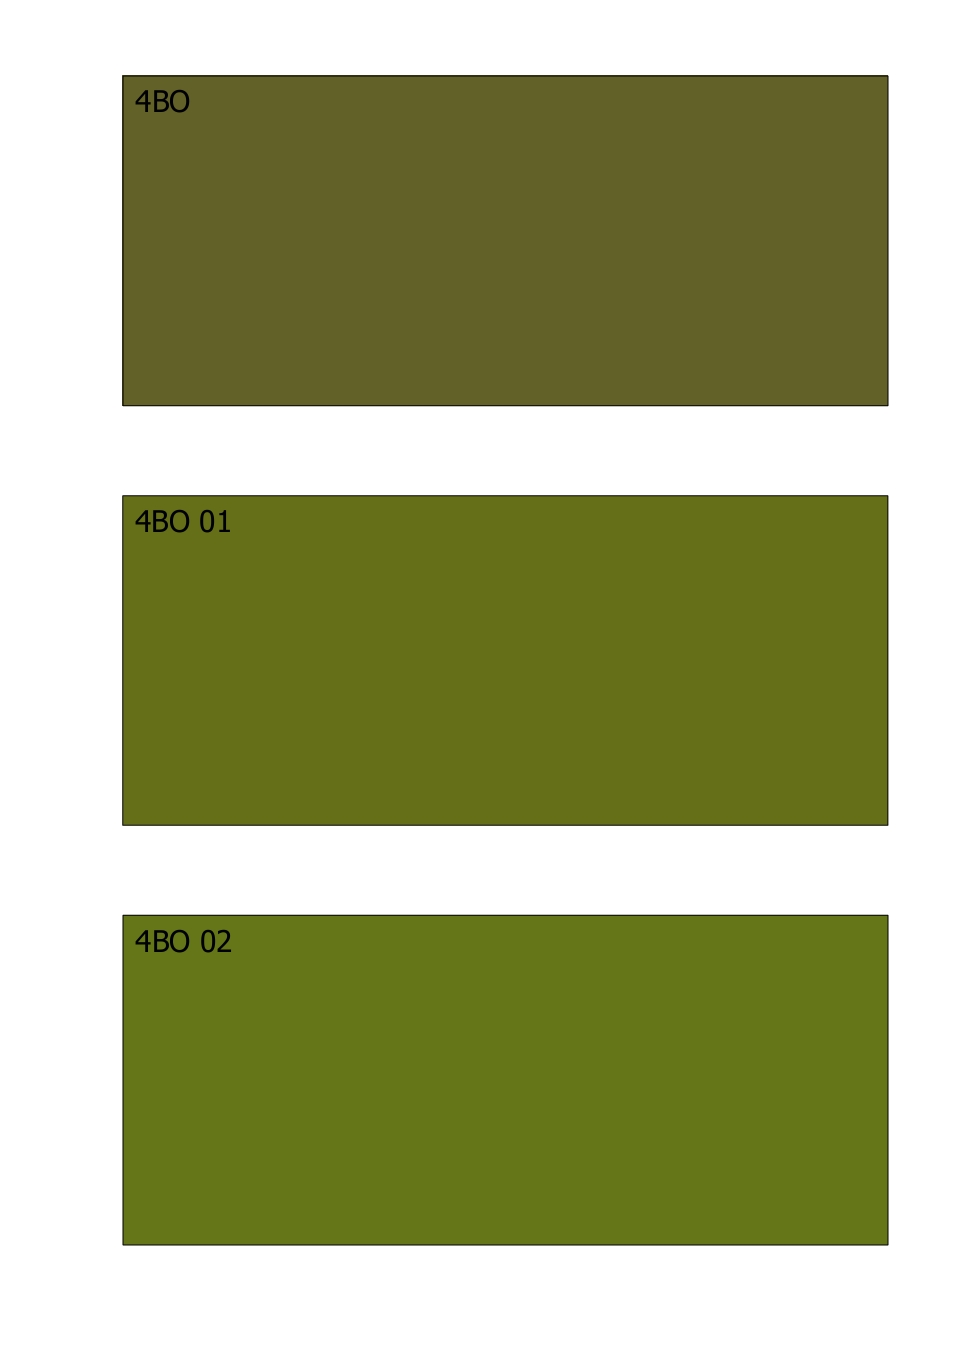 Виды хаки. Хаки армейский (RAL-7008). Краска защитного цвета. Цвет хаки краска. Оттенки краски хаки.